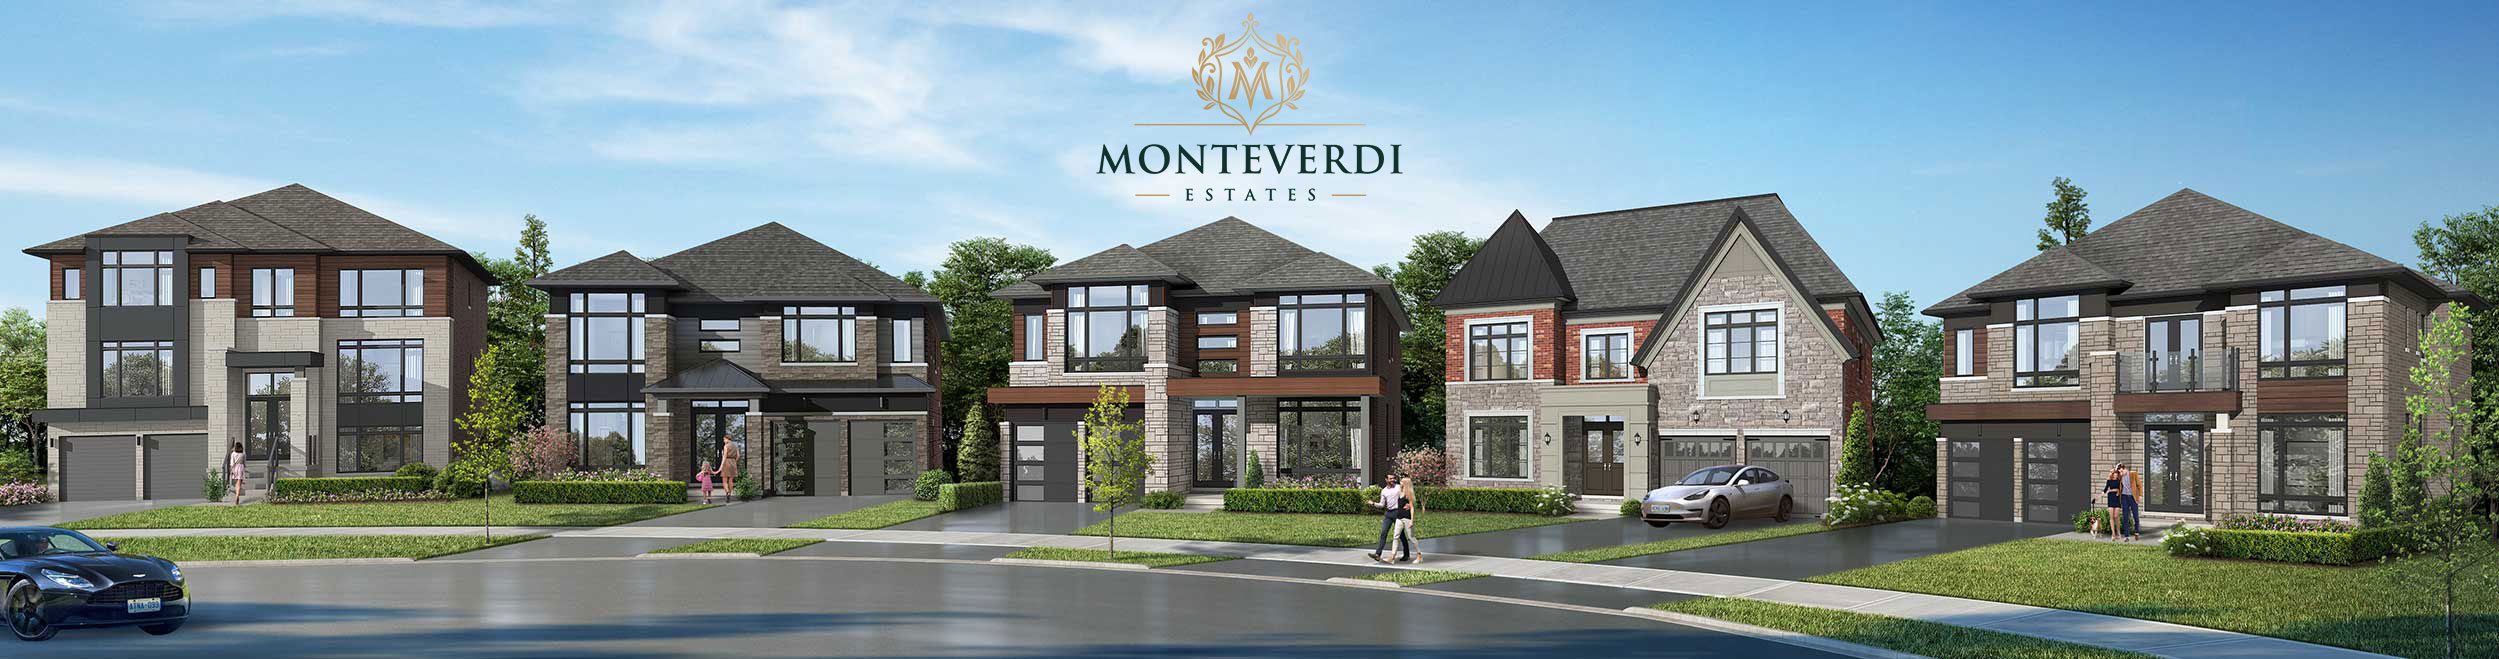 Monteverdi Estates